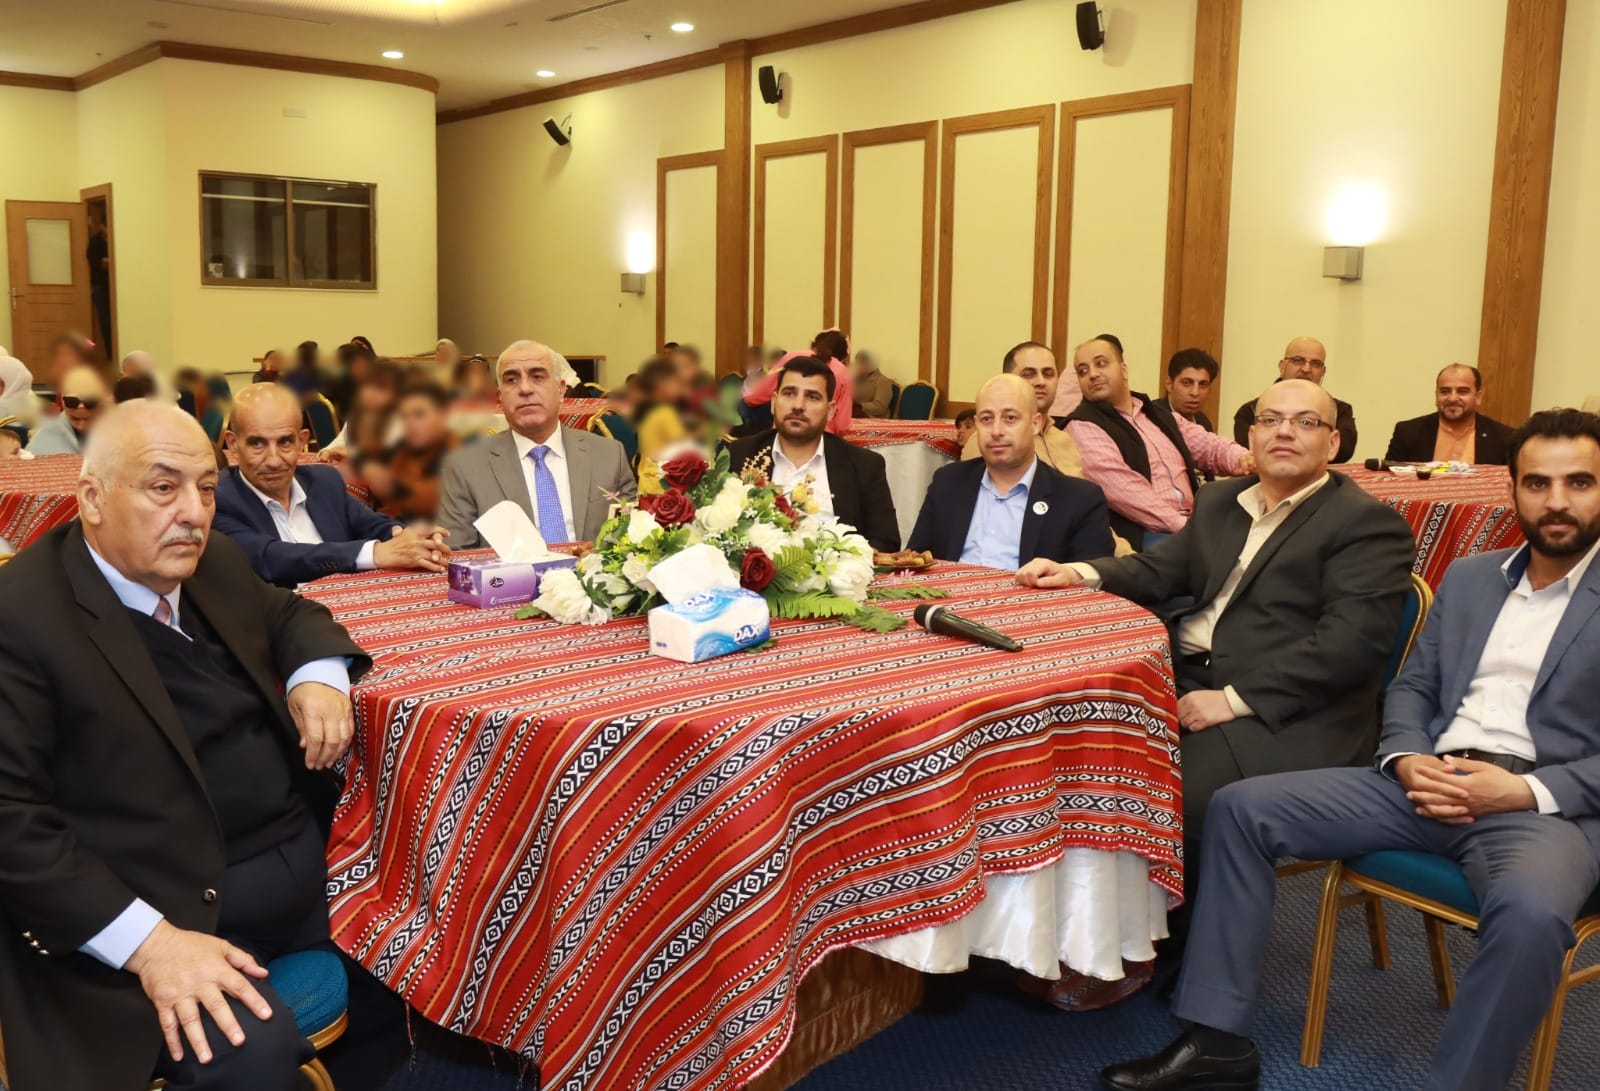  رئيس جامعة الحسين بن طلال يرعى حفل توزيع الهدايا على الأطفال الأيتام في معان.